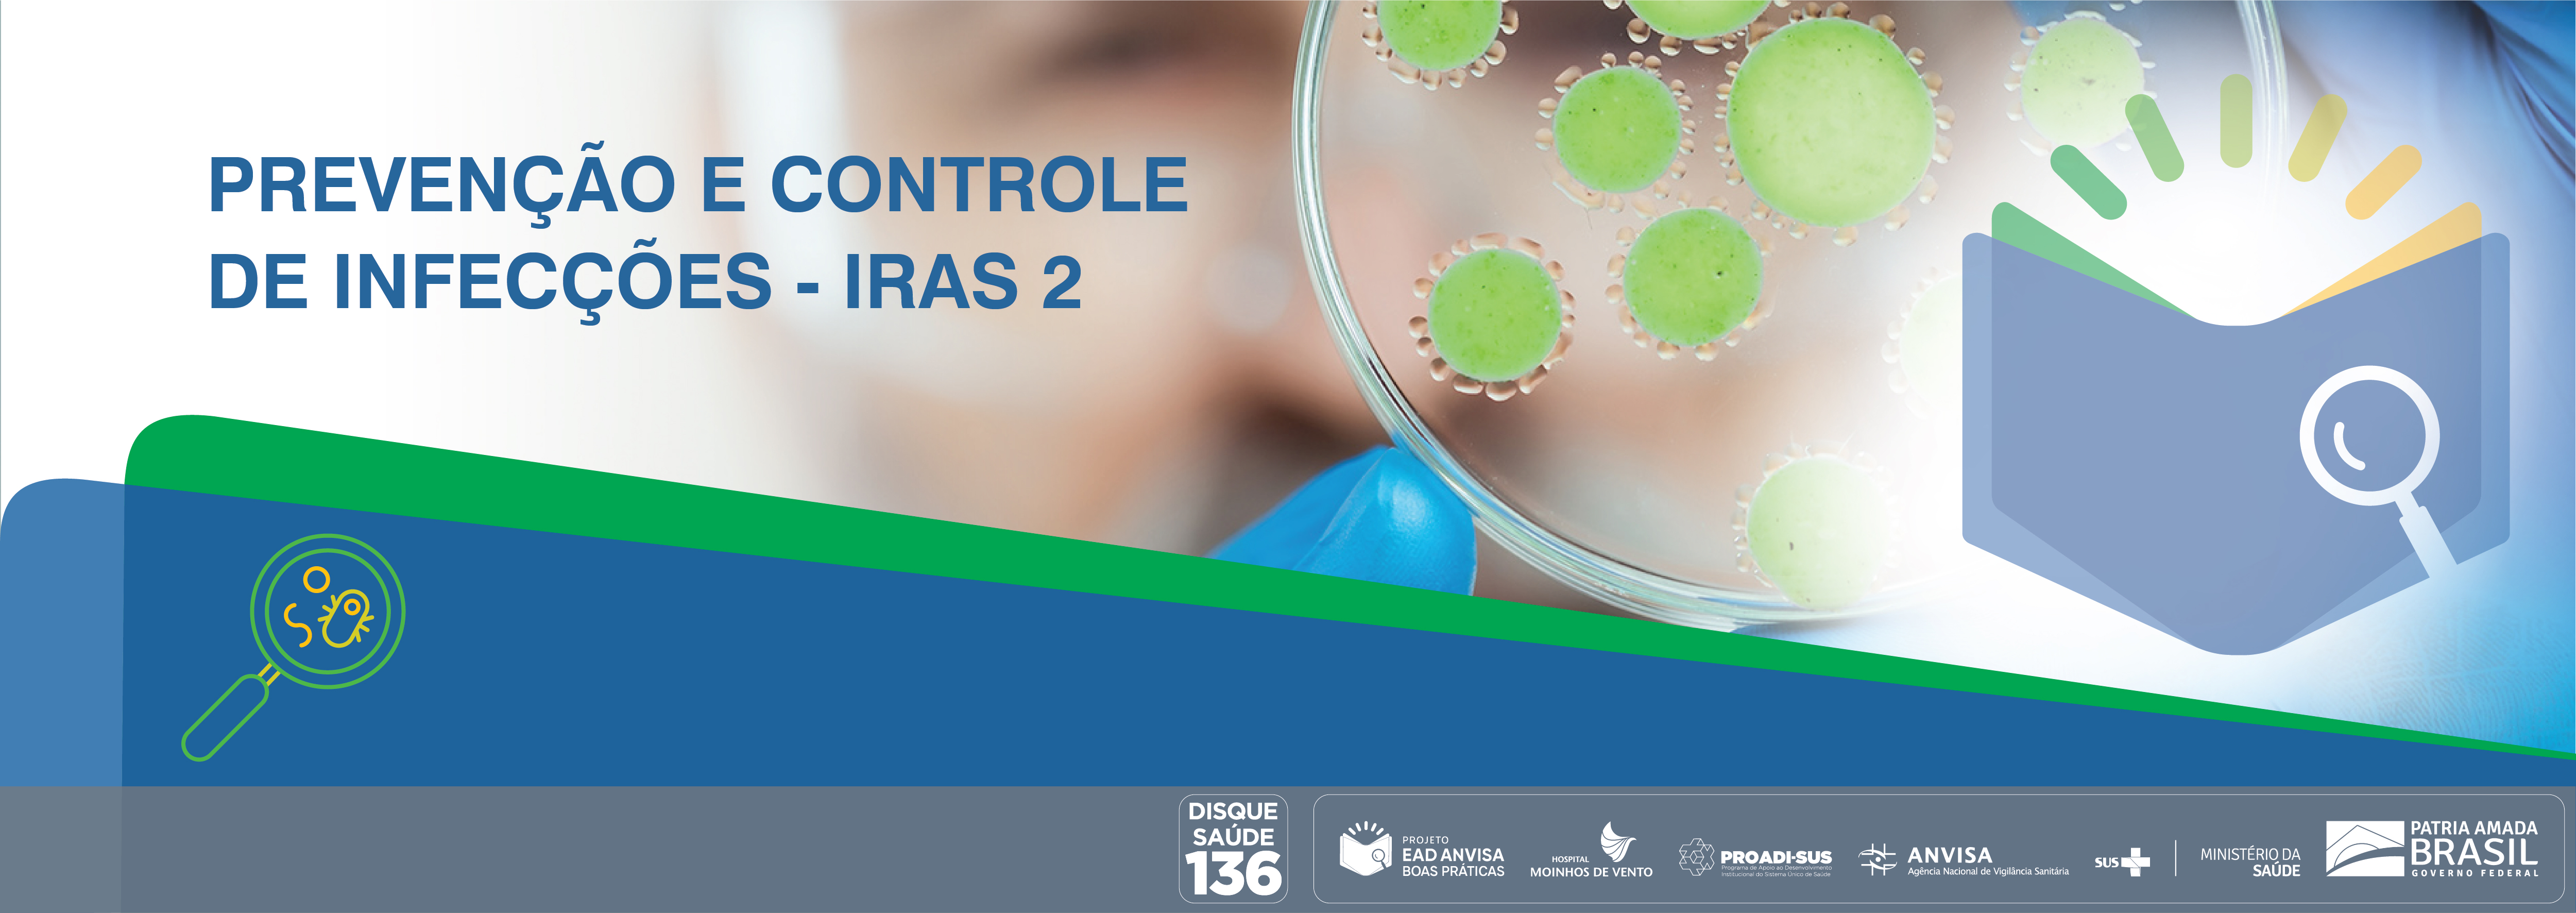 Boas Práticas de Inspeção em Serviços de Saúde com foco nas Ações de Prevenção e Controle das Infecções Relacionadas à Assistência à Saúde e Resistência Microbiana (RM) - Módulo 2 ANVISA_IRAS2_2020_V2